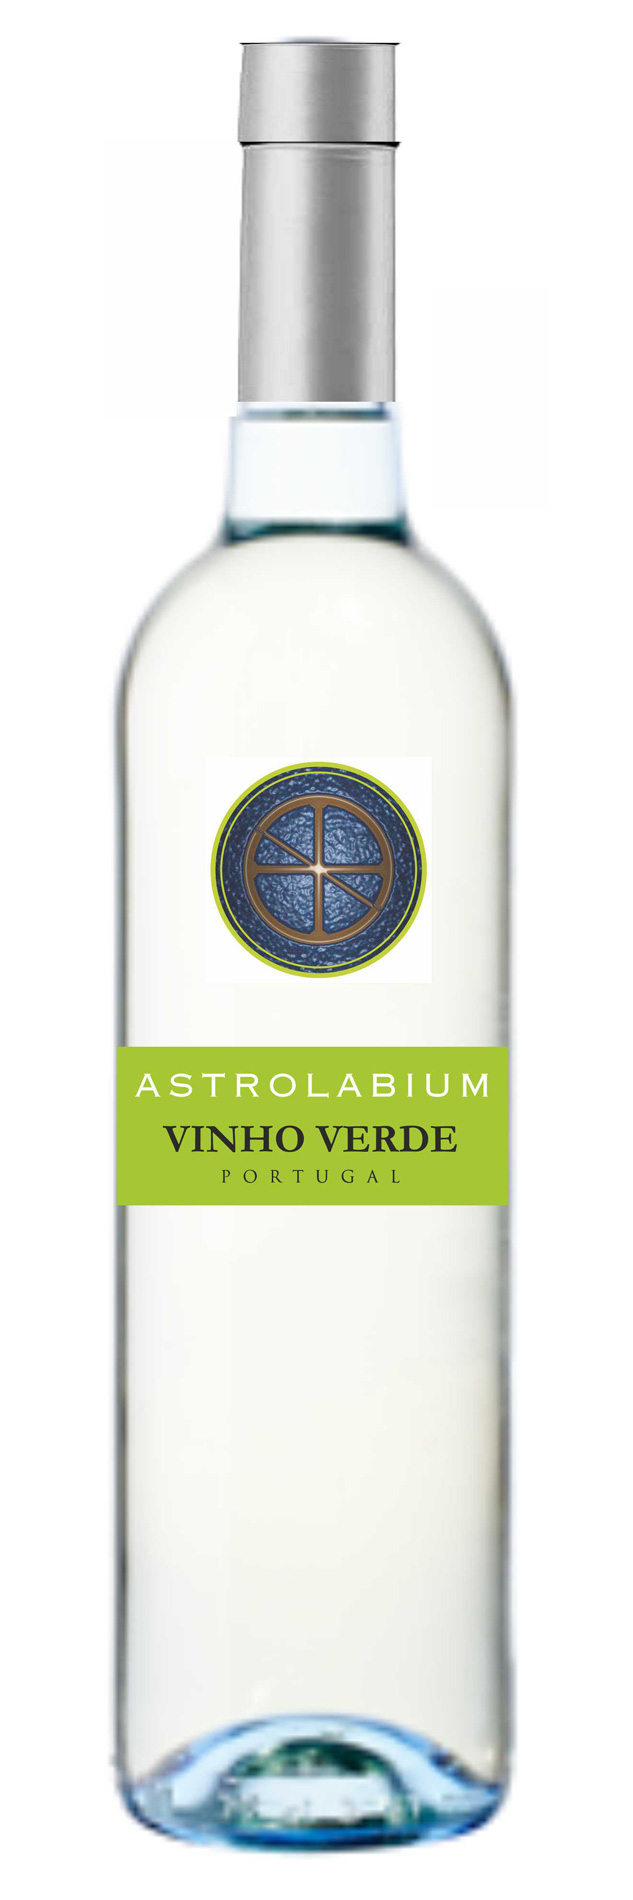 Astrolabium Vinho Verde